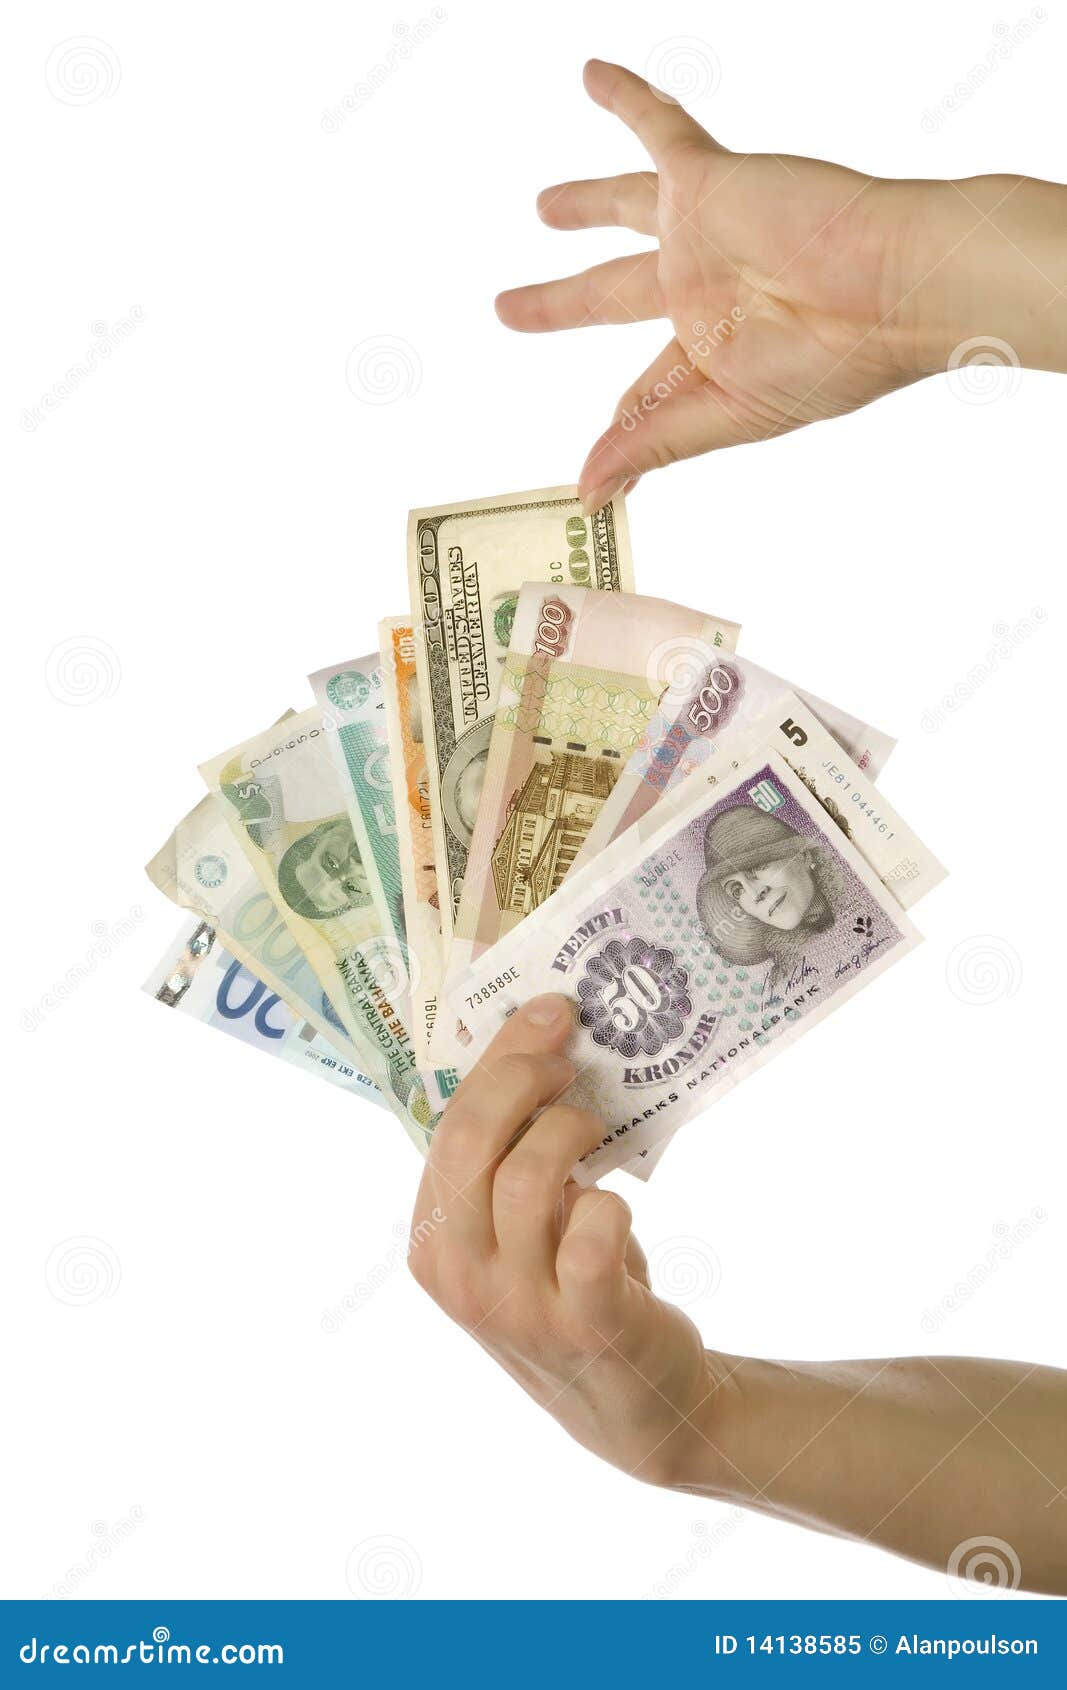 Het nemen van 100 dollars van verschillende munten. Een persoon die wat geld van de V.S. van een handvol verschillende munten uitkiest.